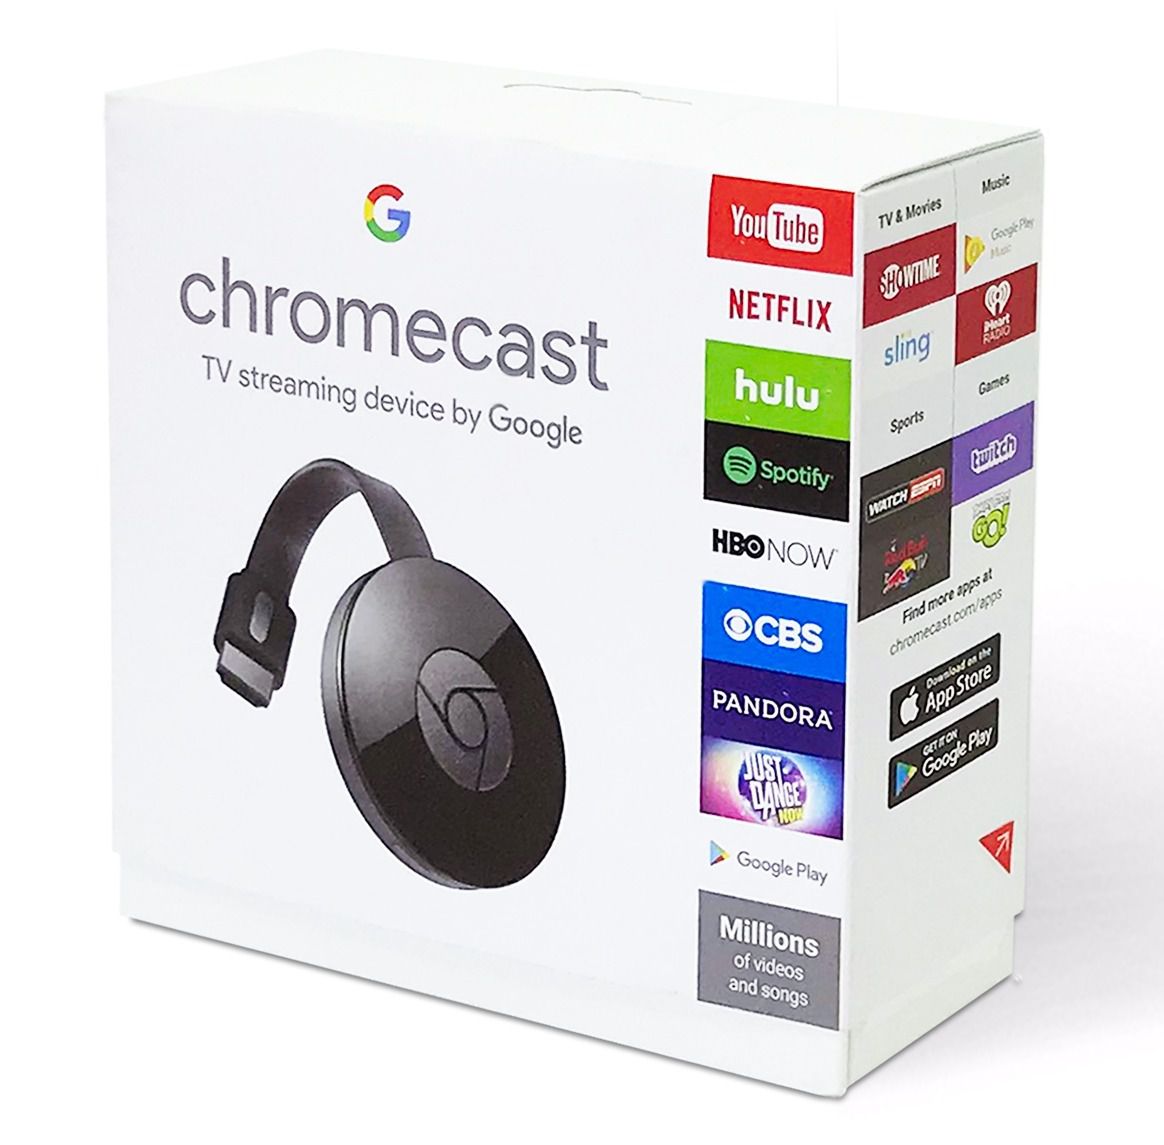 Chromecast 2 Google Hdmi Edição 2016 Chrome Cast - Mgb brasil